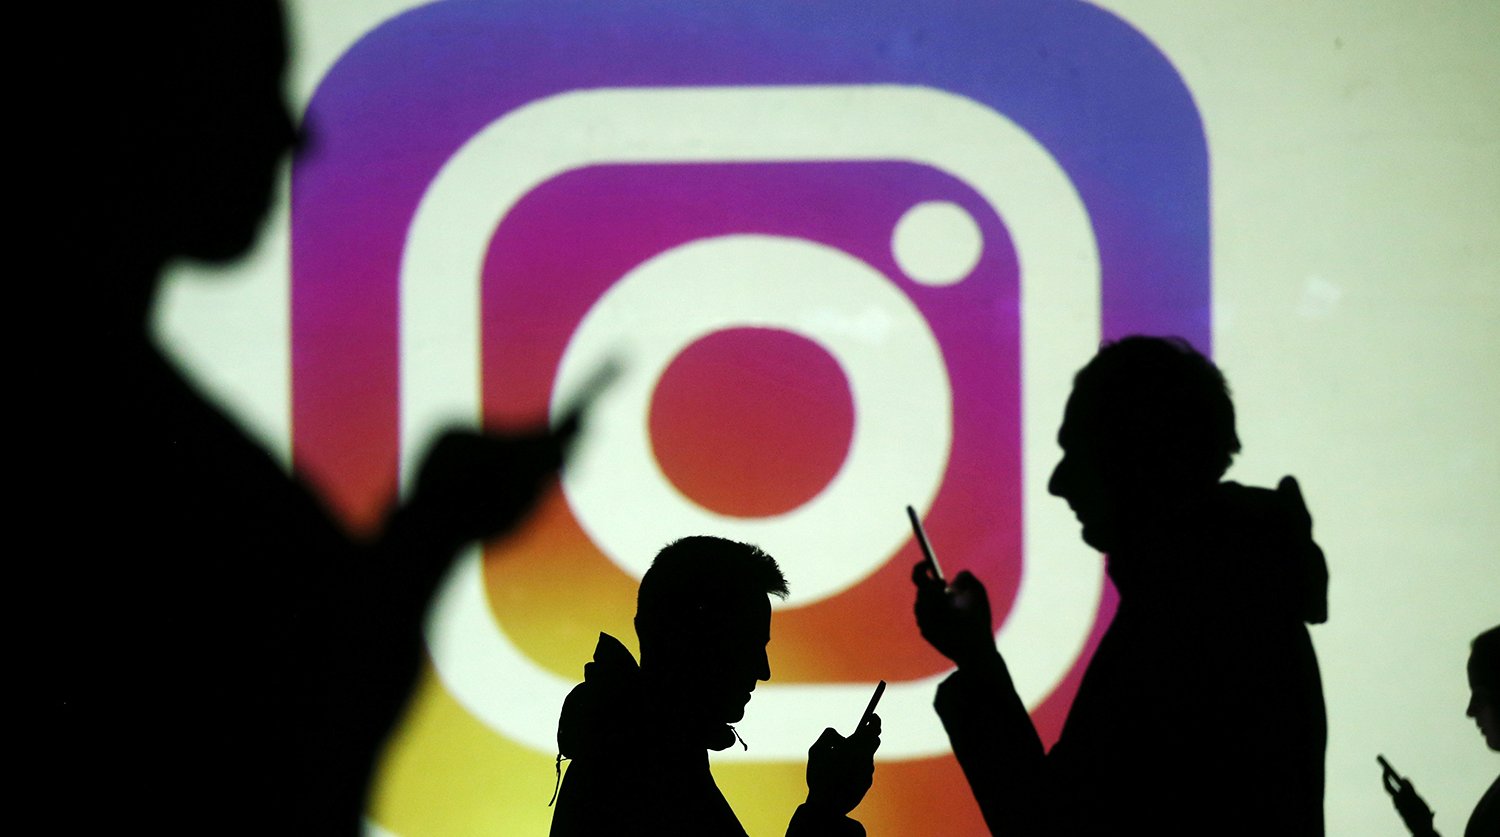 Instagram-ը փորձարկում է նոր գործառույթ, որը թույլ կտա օգտատերերին հրապարակումներ կատարել նաև անձնական համակարգիչներից